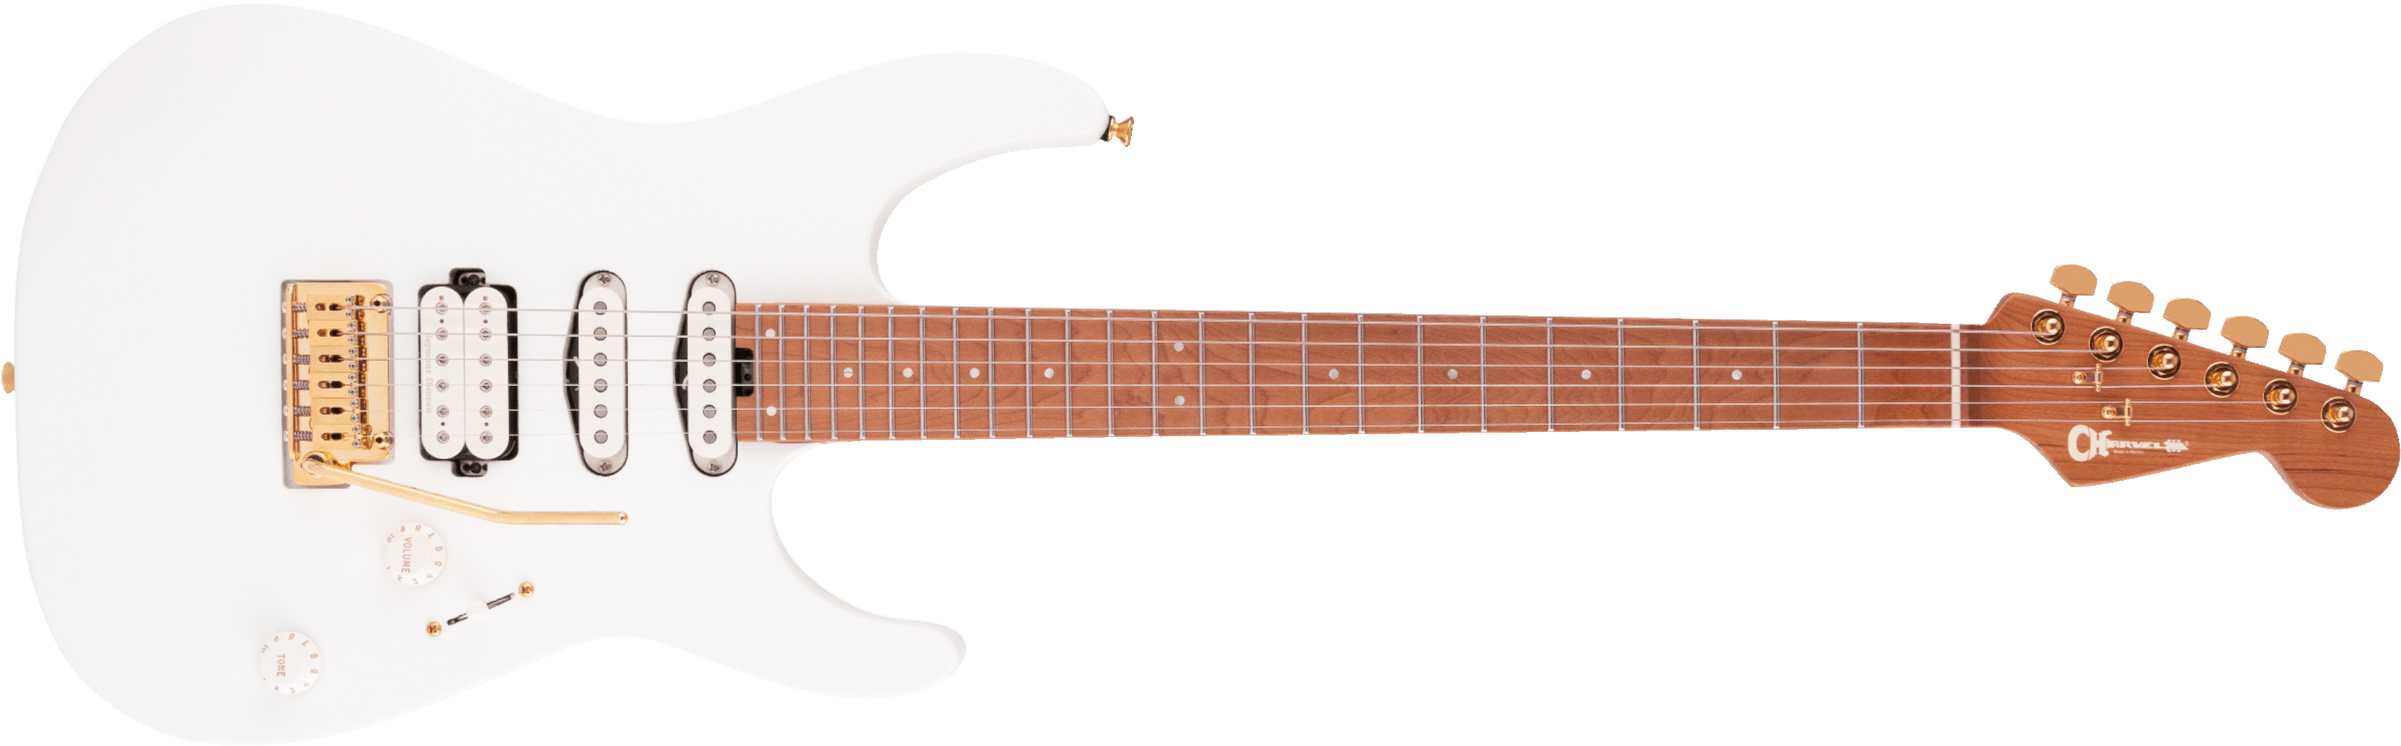 Charvel Dinky Dk24 Hss 2pt Cm Pro-mod Seymour Duncan Trem Mn - Snow White - Guitarra eléctrica con forma de str. - Main picture